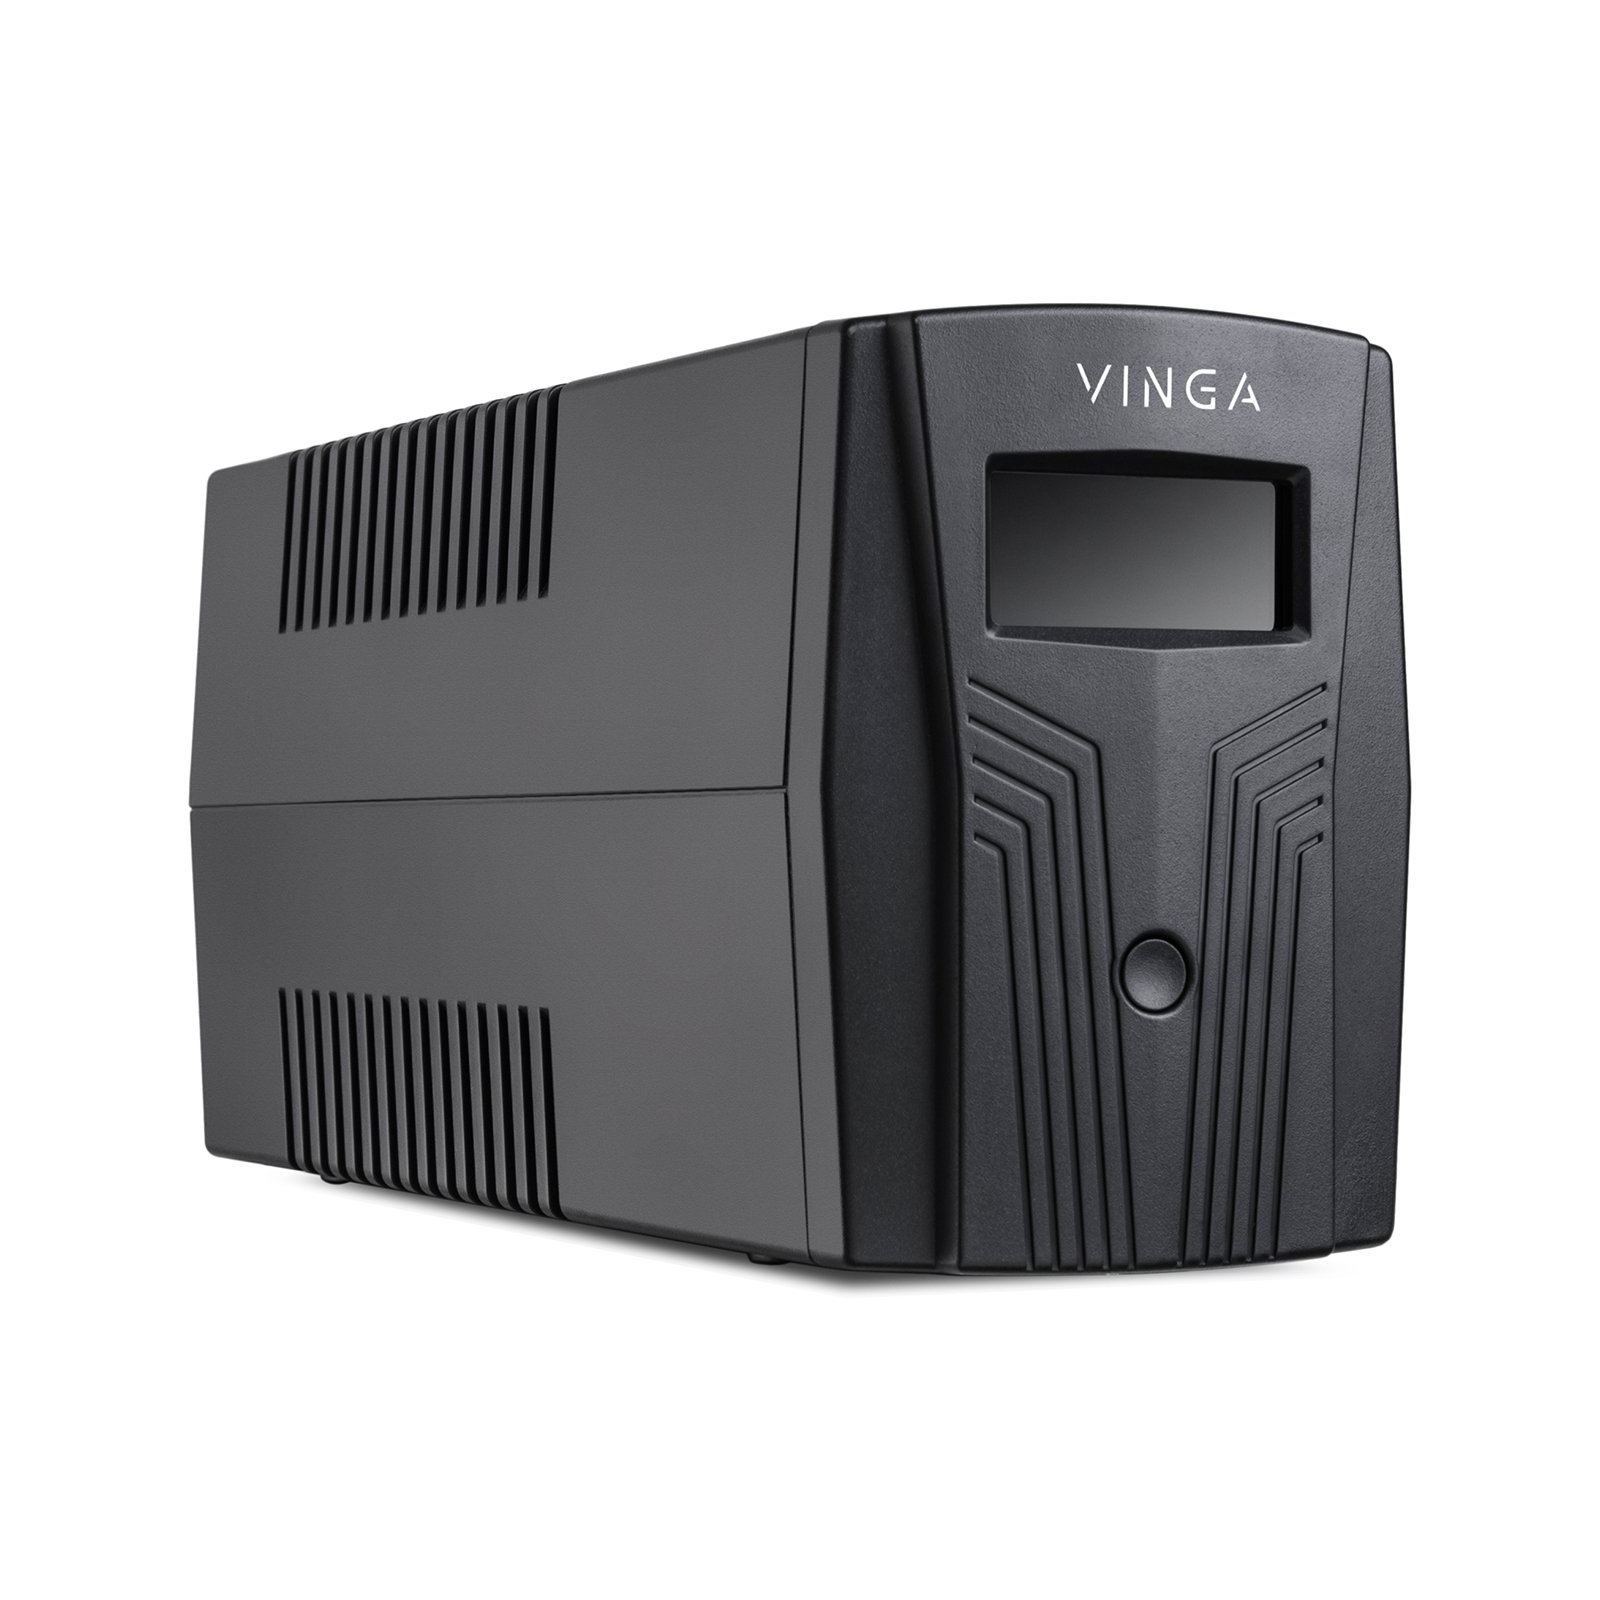 Источник бесперебойного питания Vinga LCD 1500VA plastic case (VPC-1500P) изображение 5